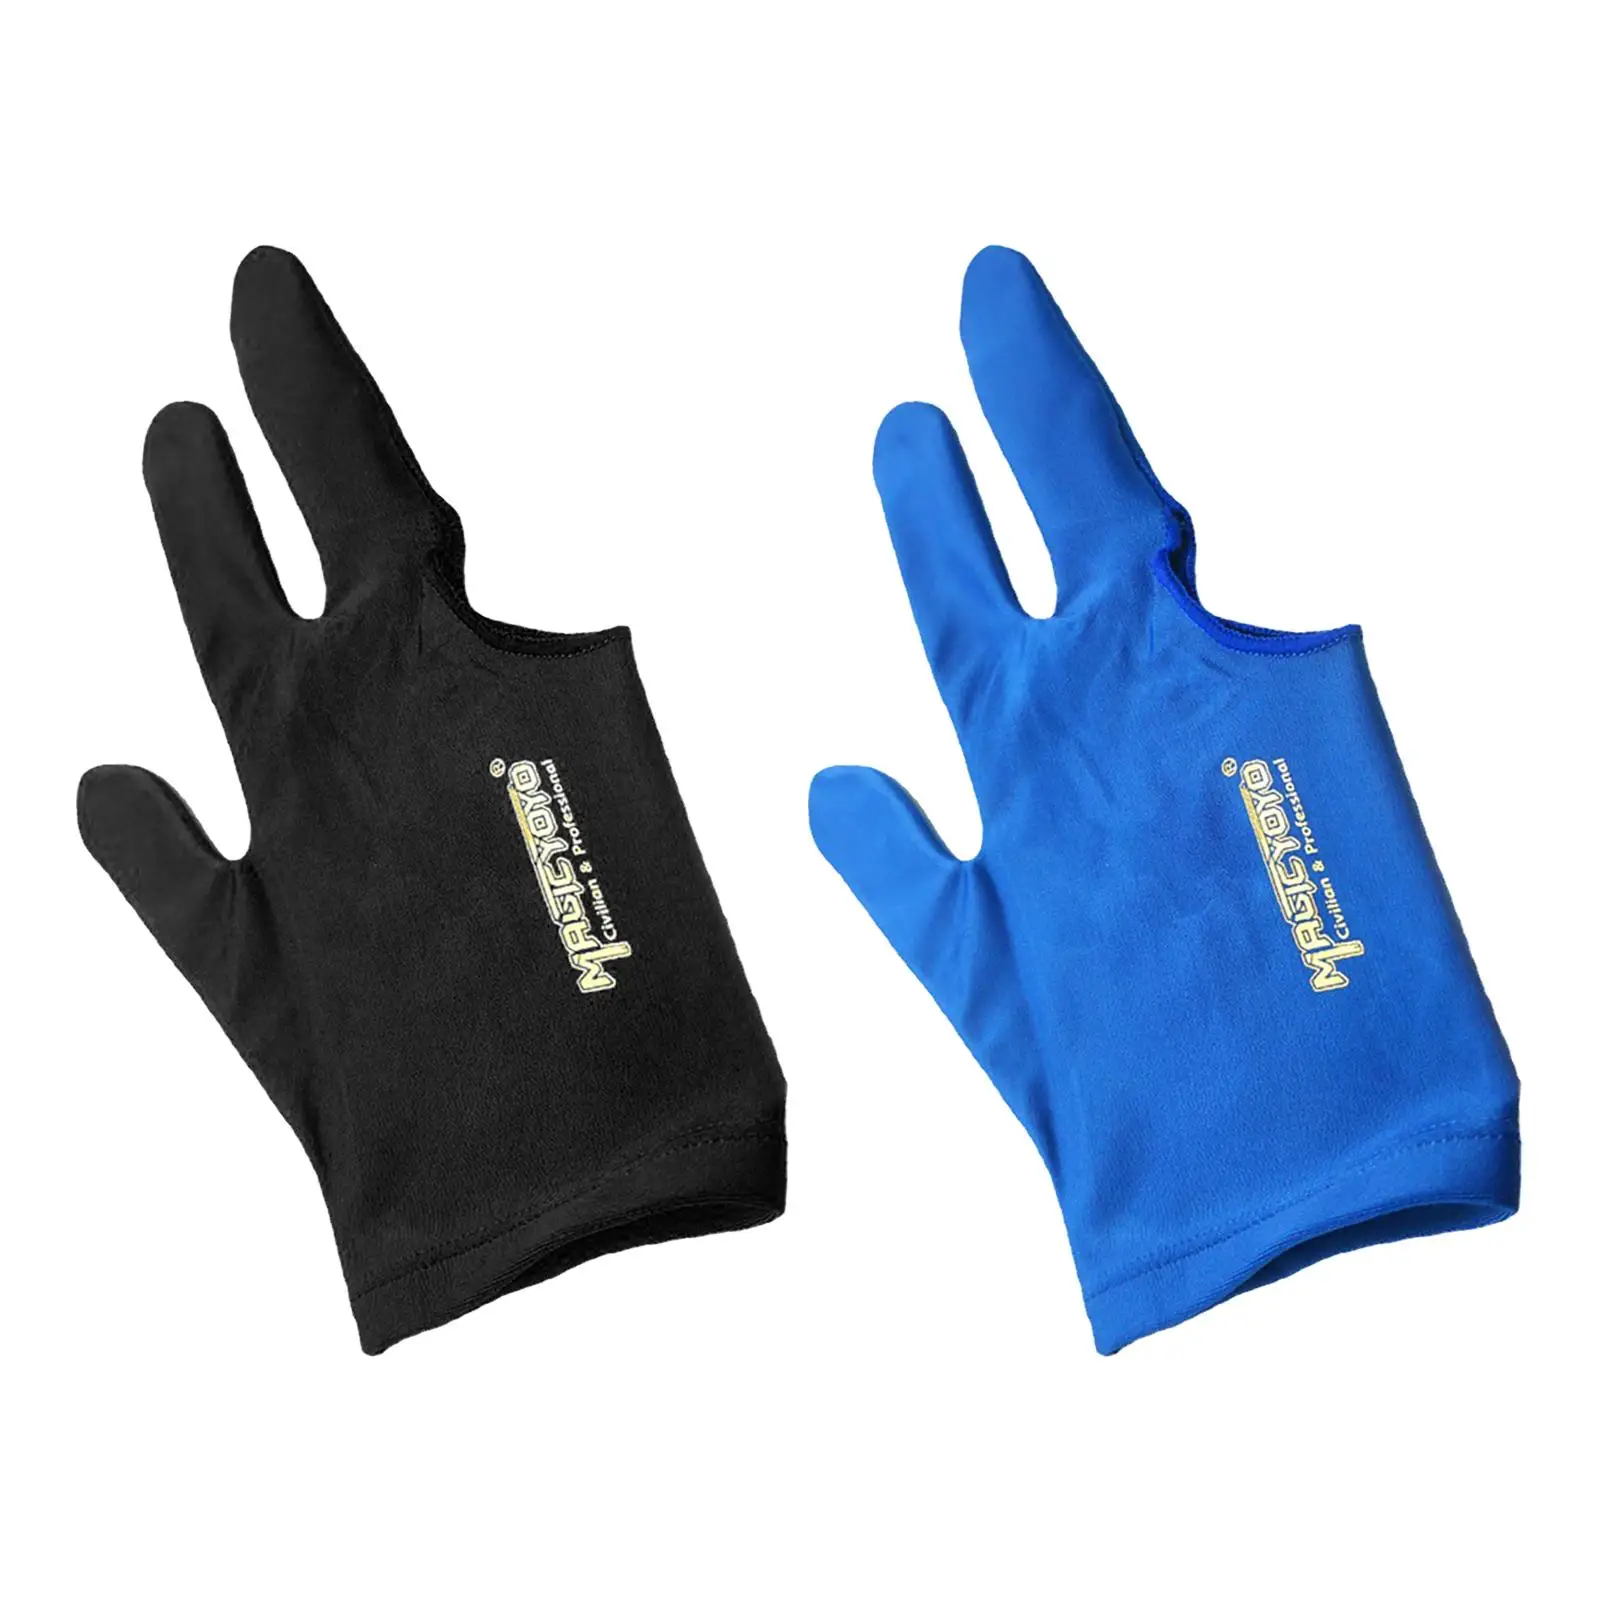 Yoyo Glove, Durable Anti Slip 3 Finger Snooker Glove, Stretch Three Finger Gloves